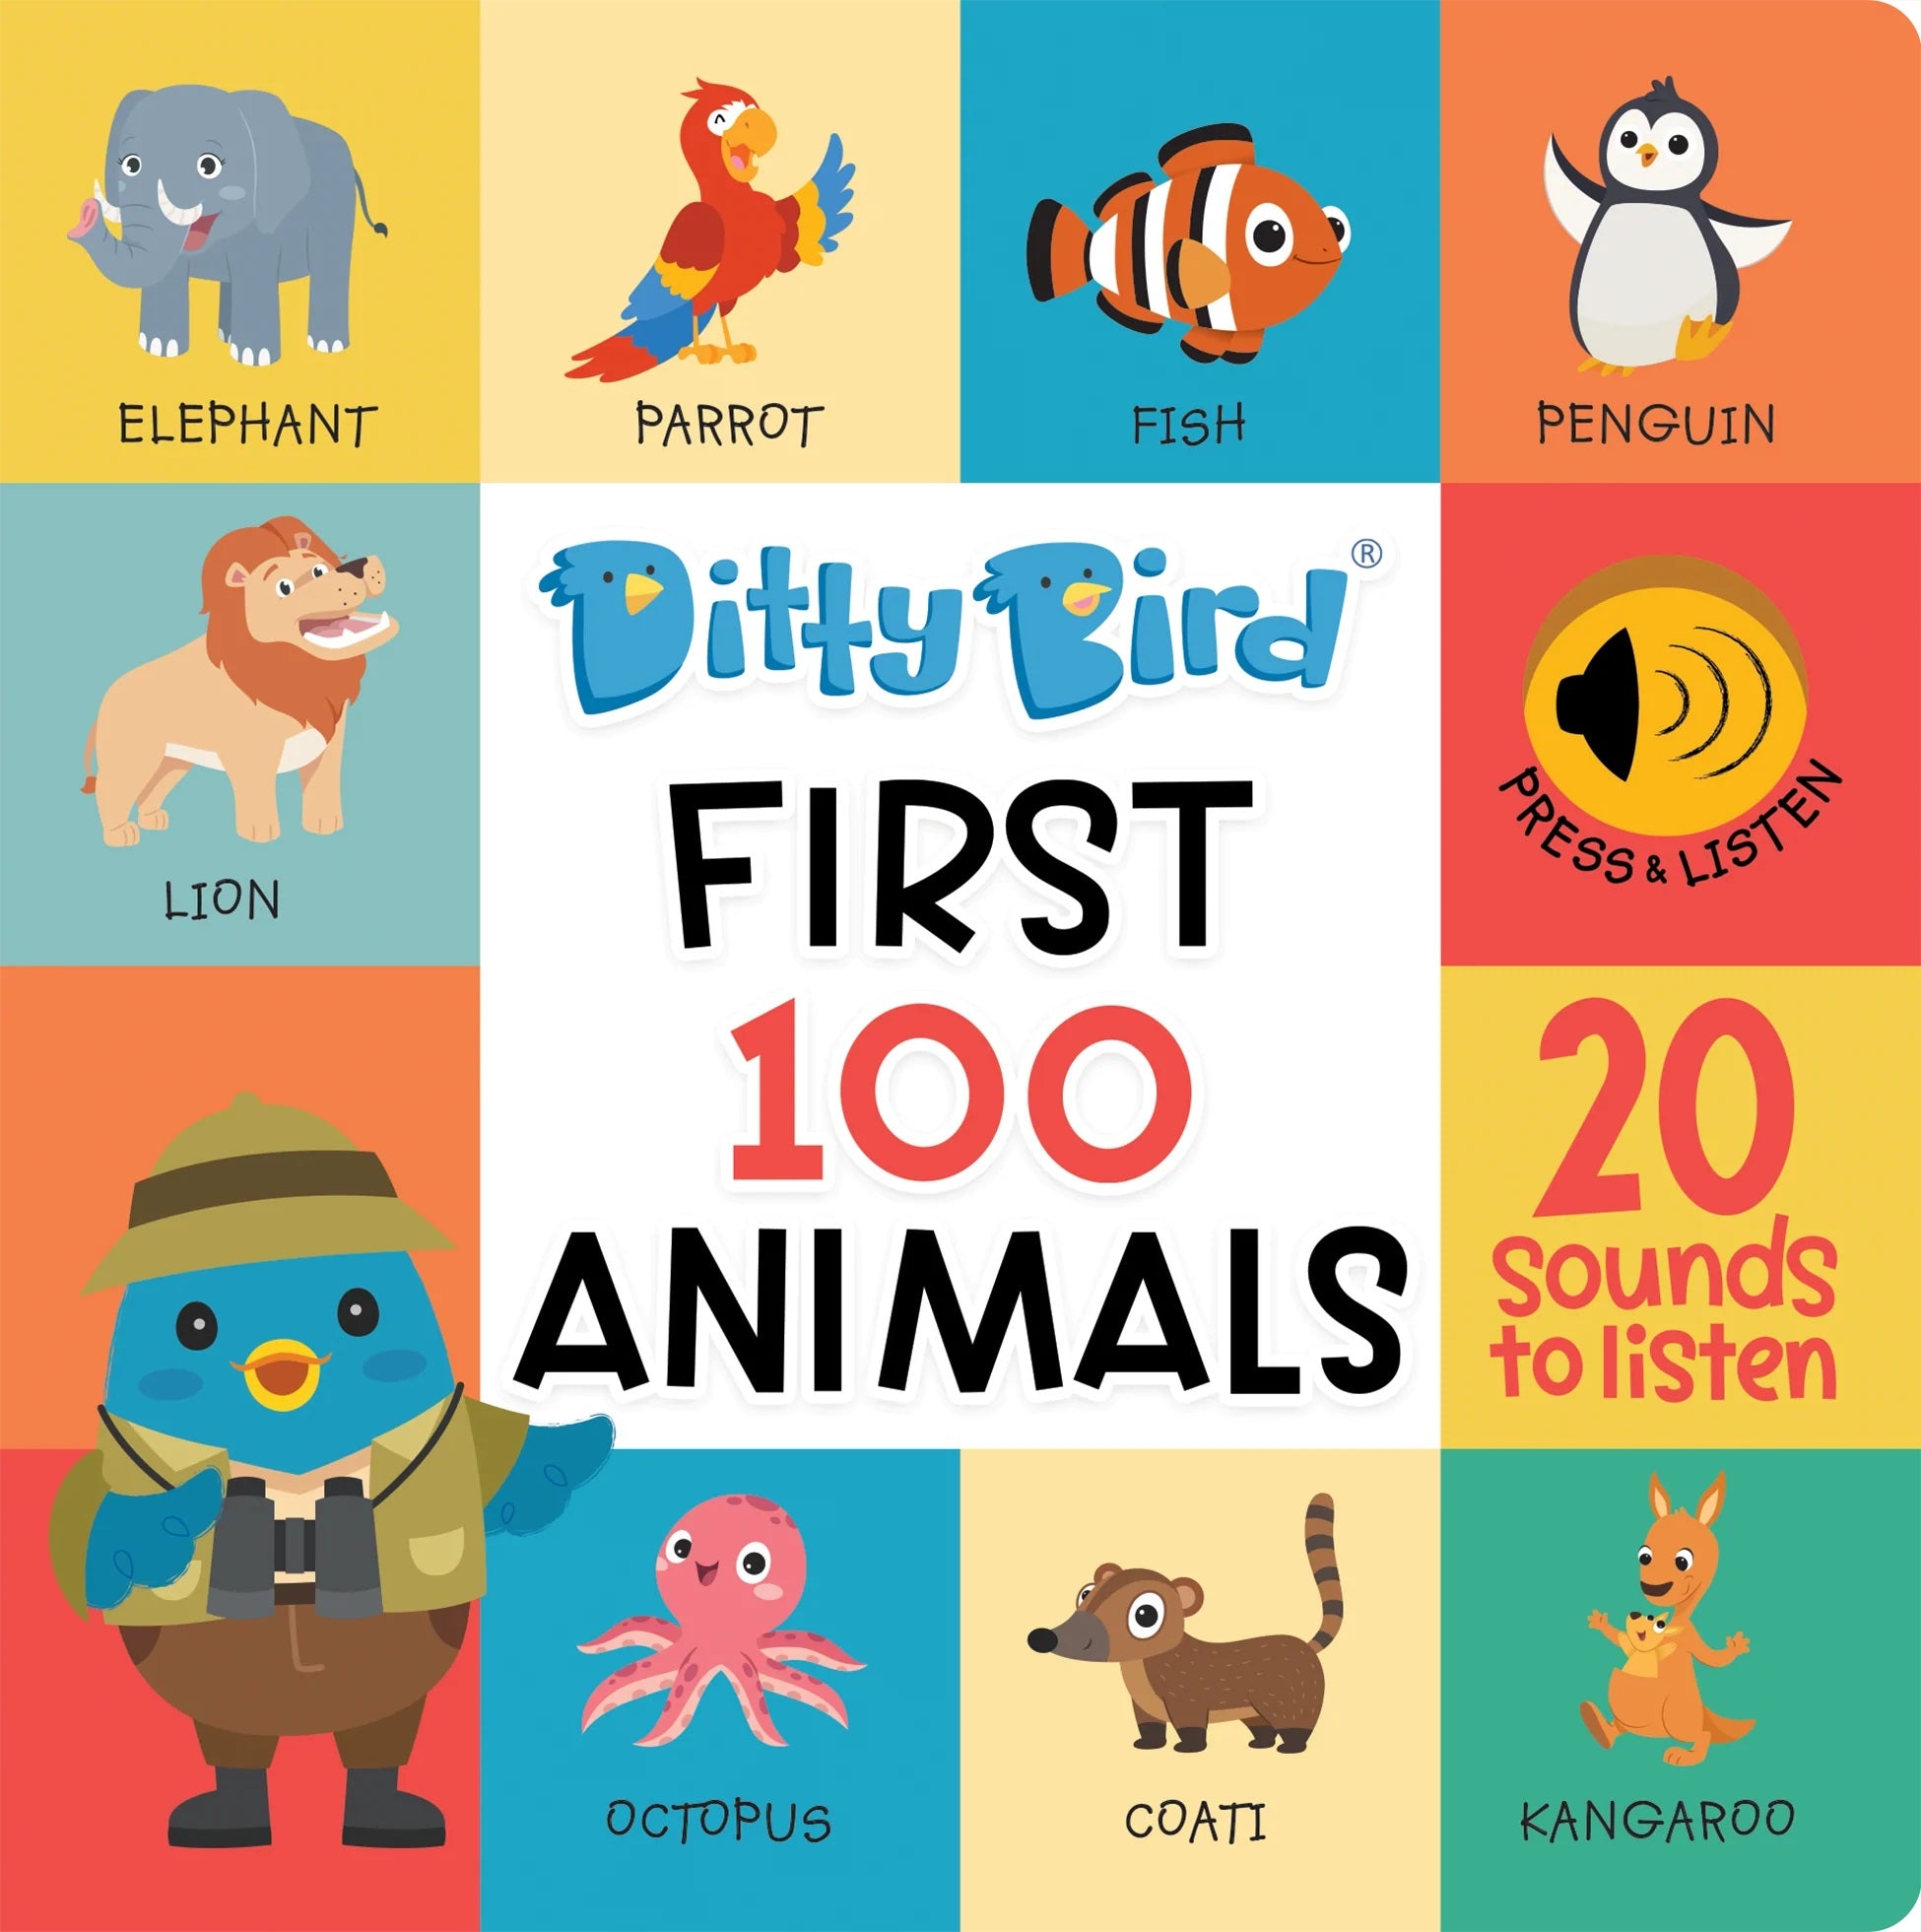 Ditty Bird Musical Book - First 100 Animals